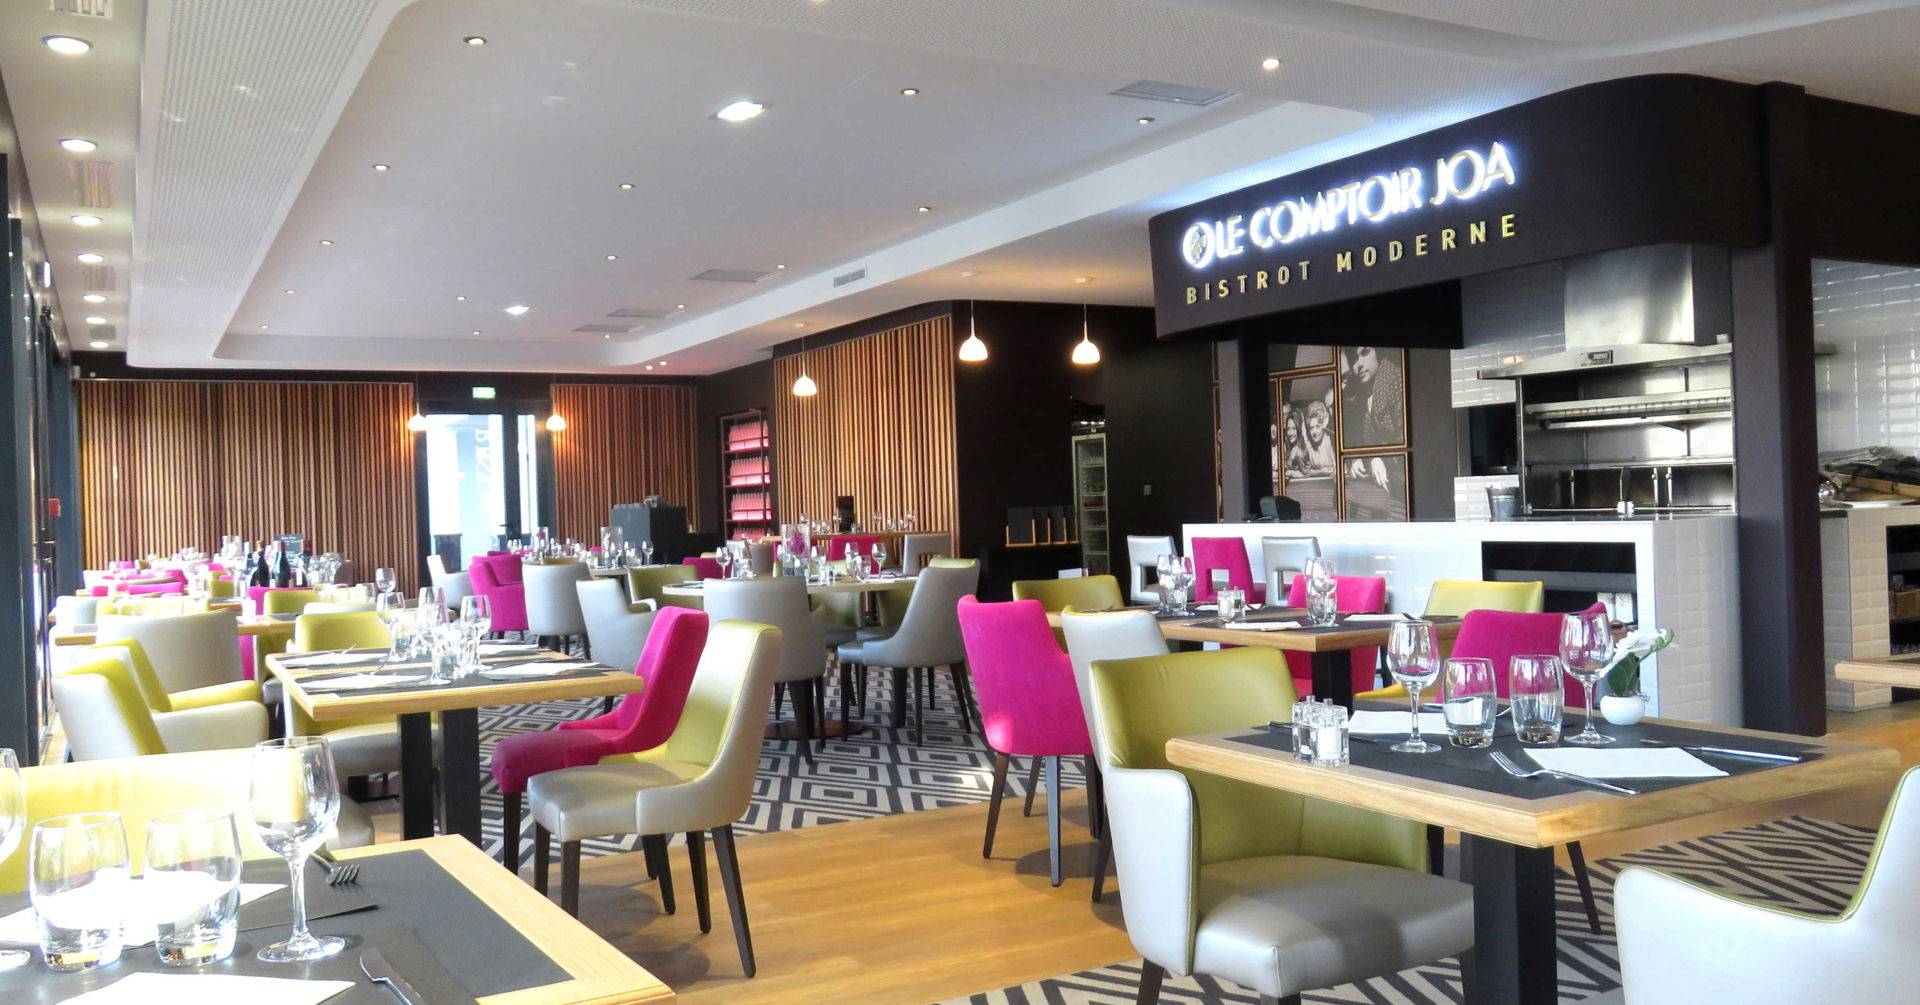 Restaurant Comptoir JOA Sables d'Olonne